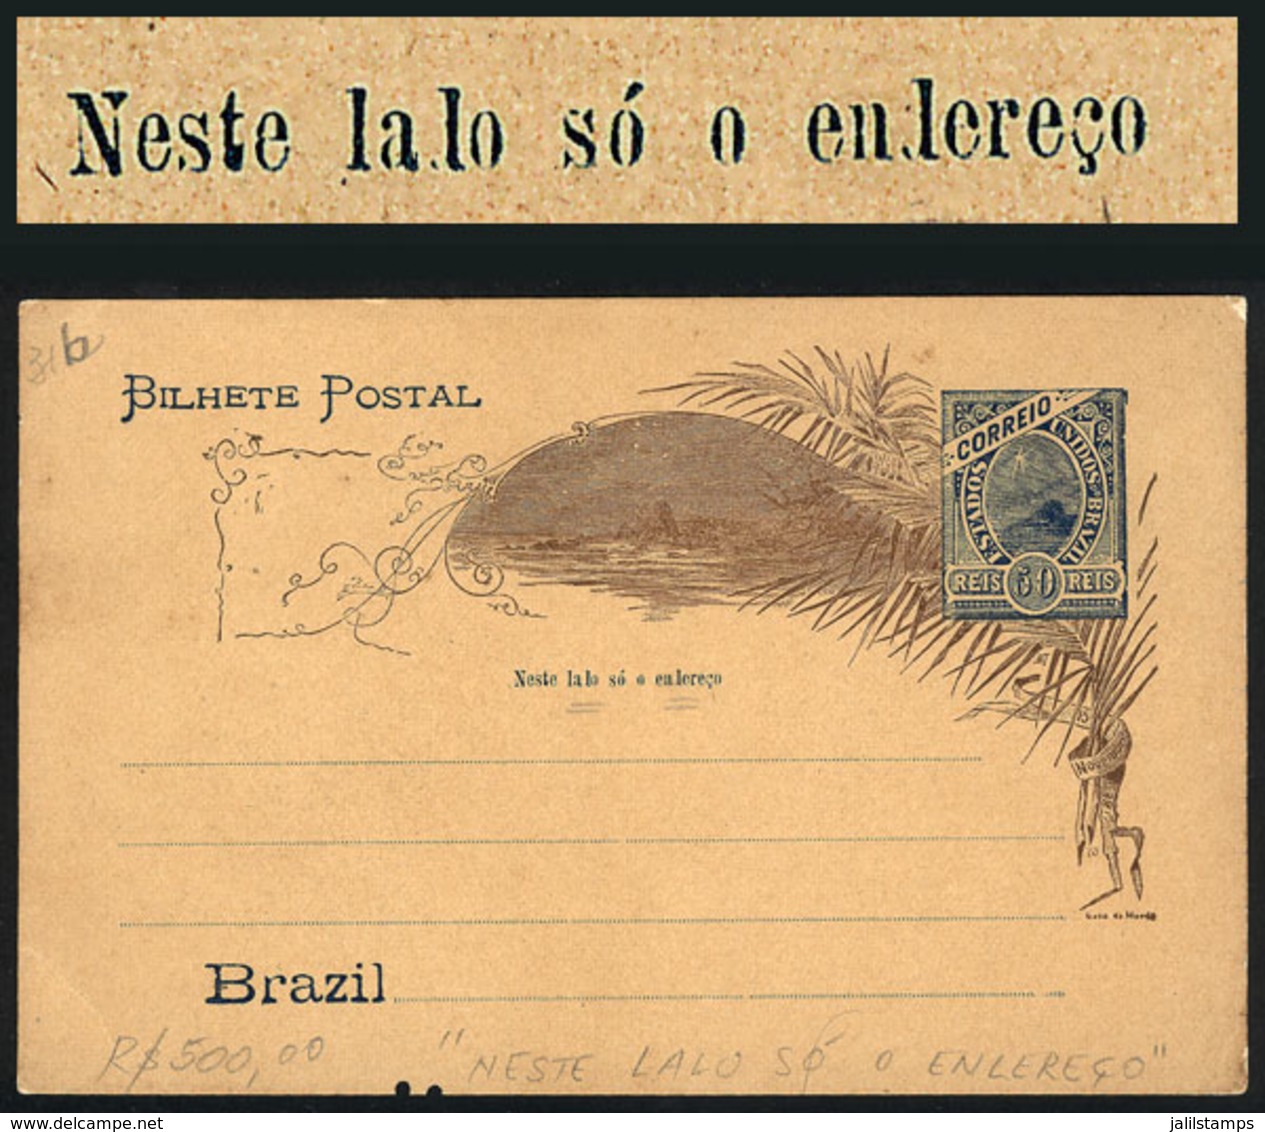 BRAZIL: RHM.BP-63, Postal Card With "NESTE LALO SÓ O ENLEREÇO" Variety, Minor Defect Below Else VF Quality!" - Ganzsachen